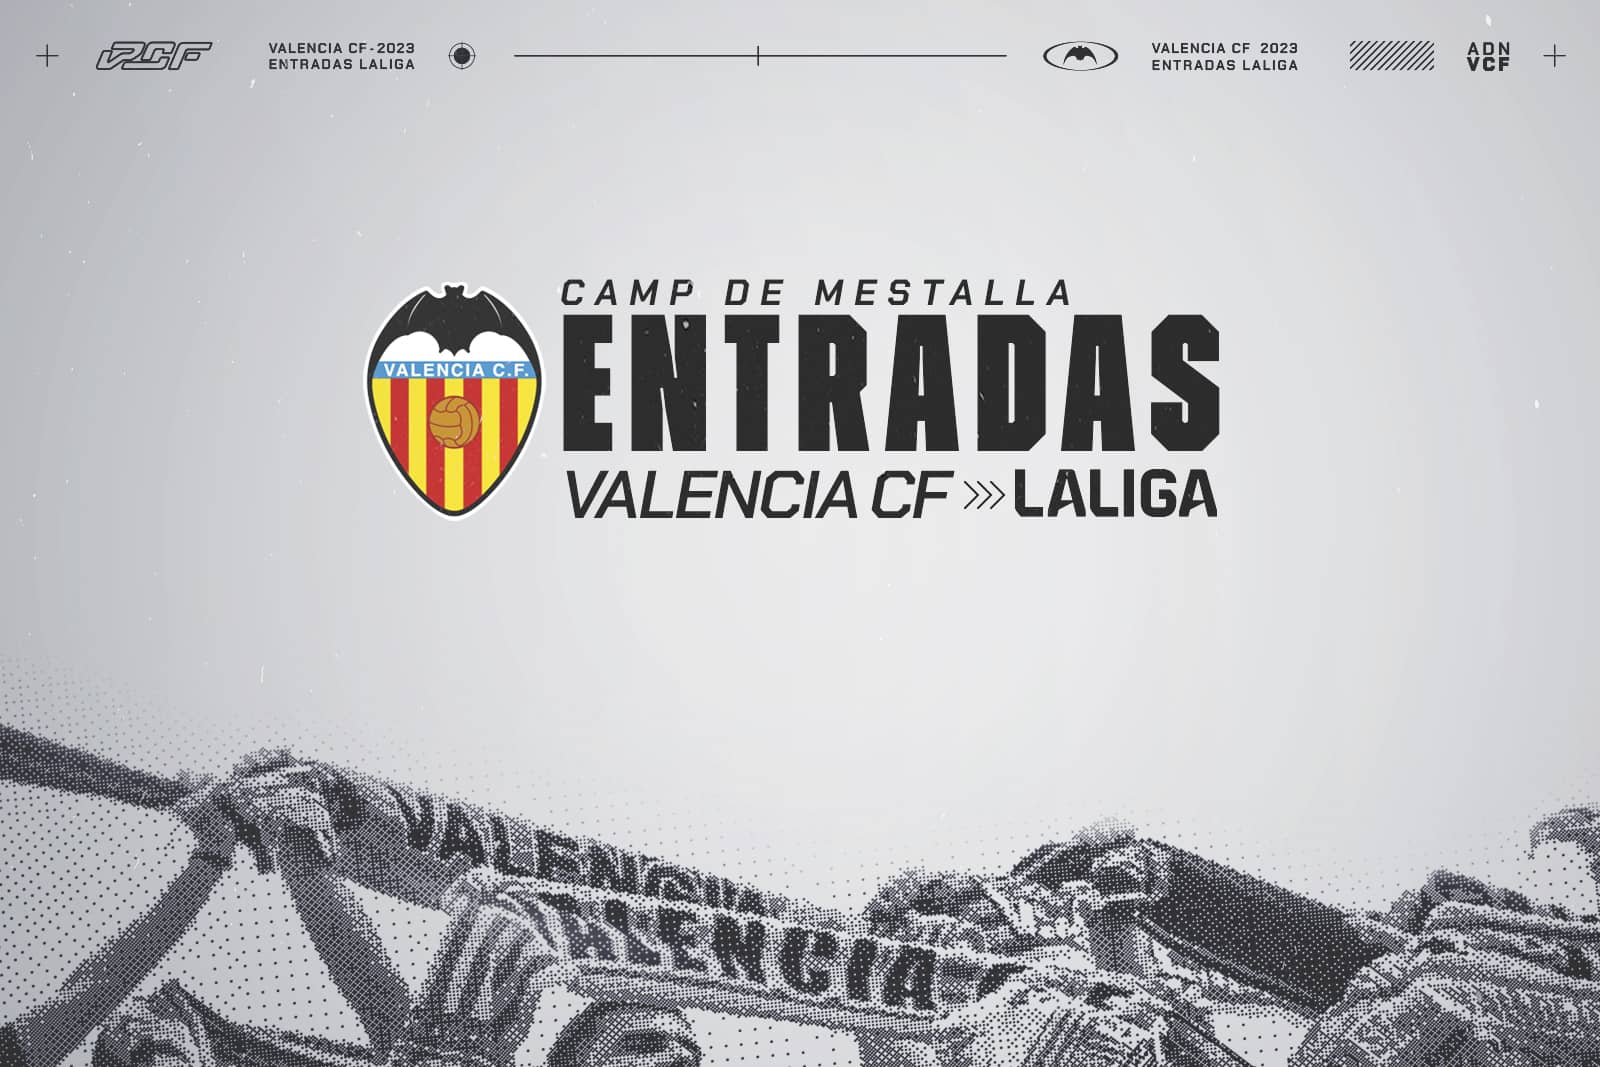 Buy FlagAndalucia Valencia CF